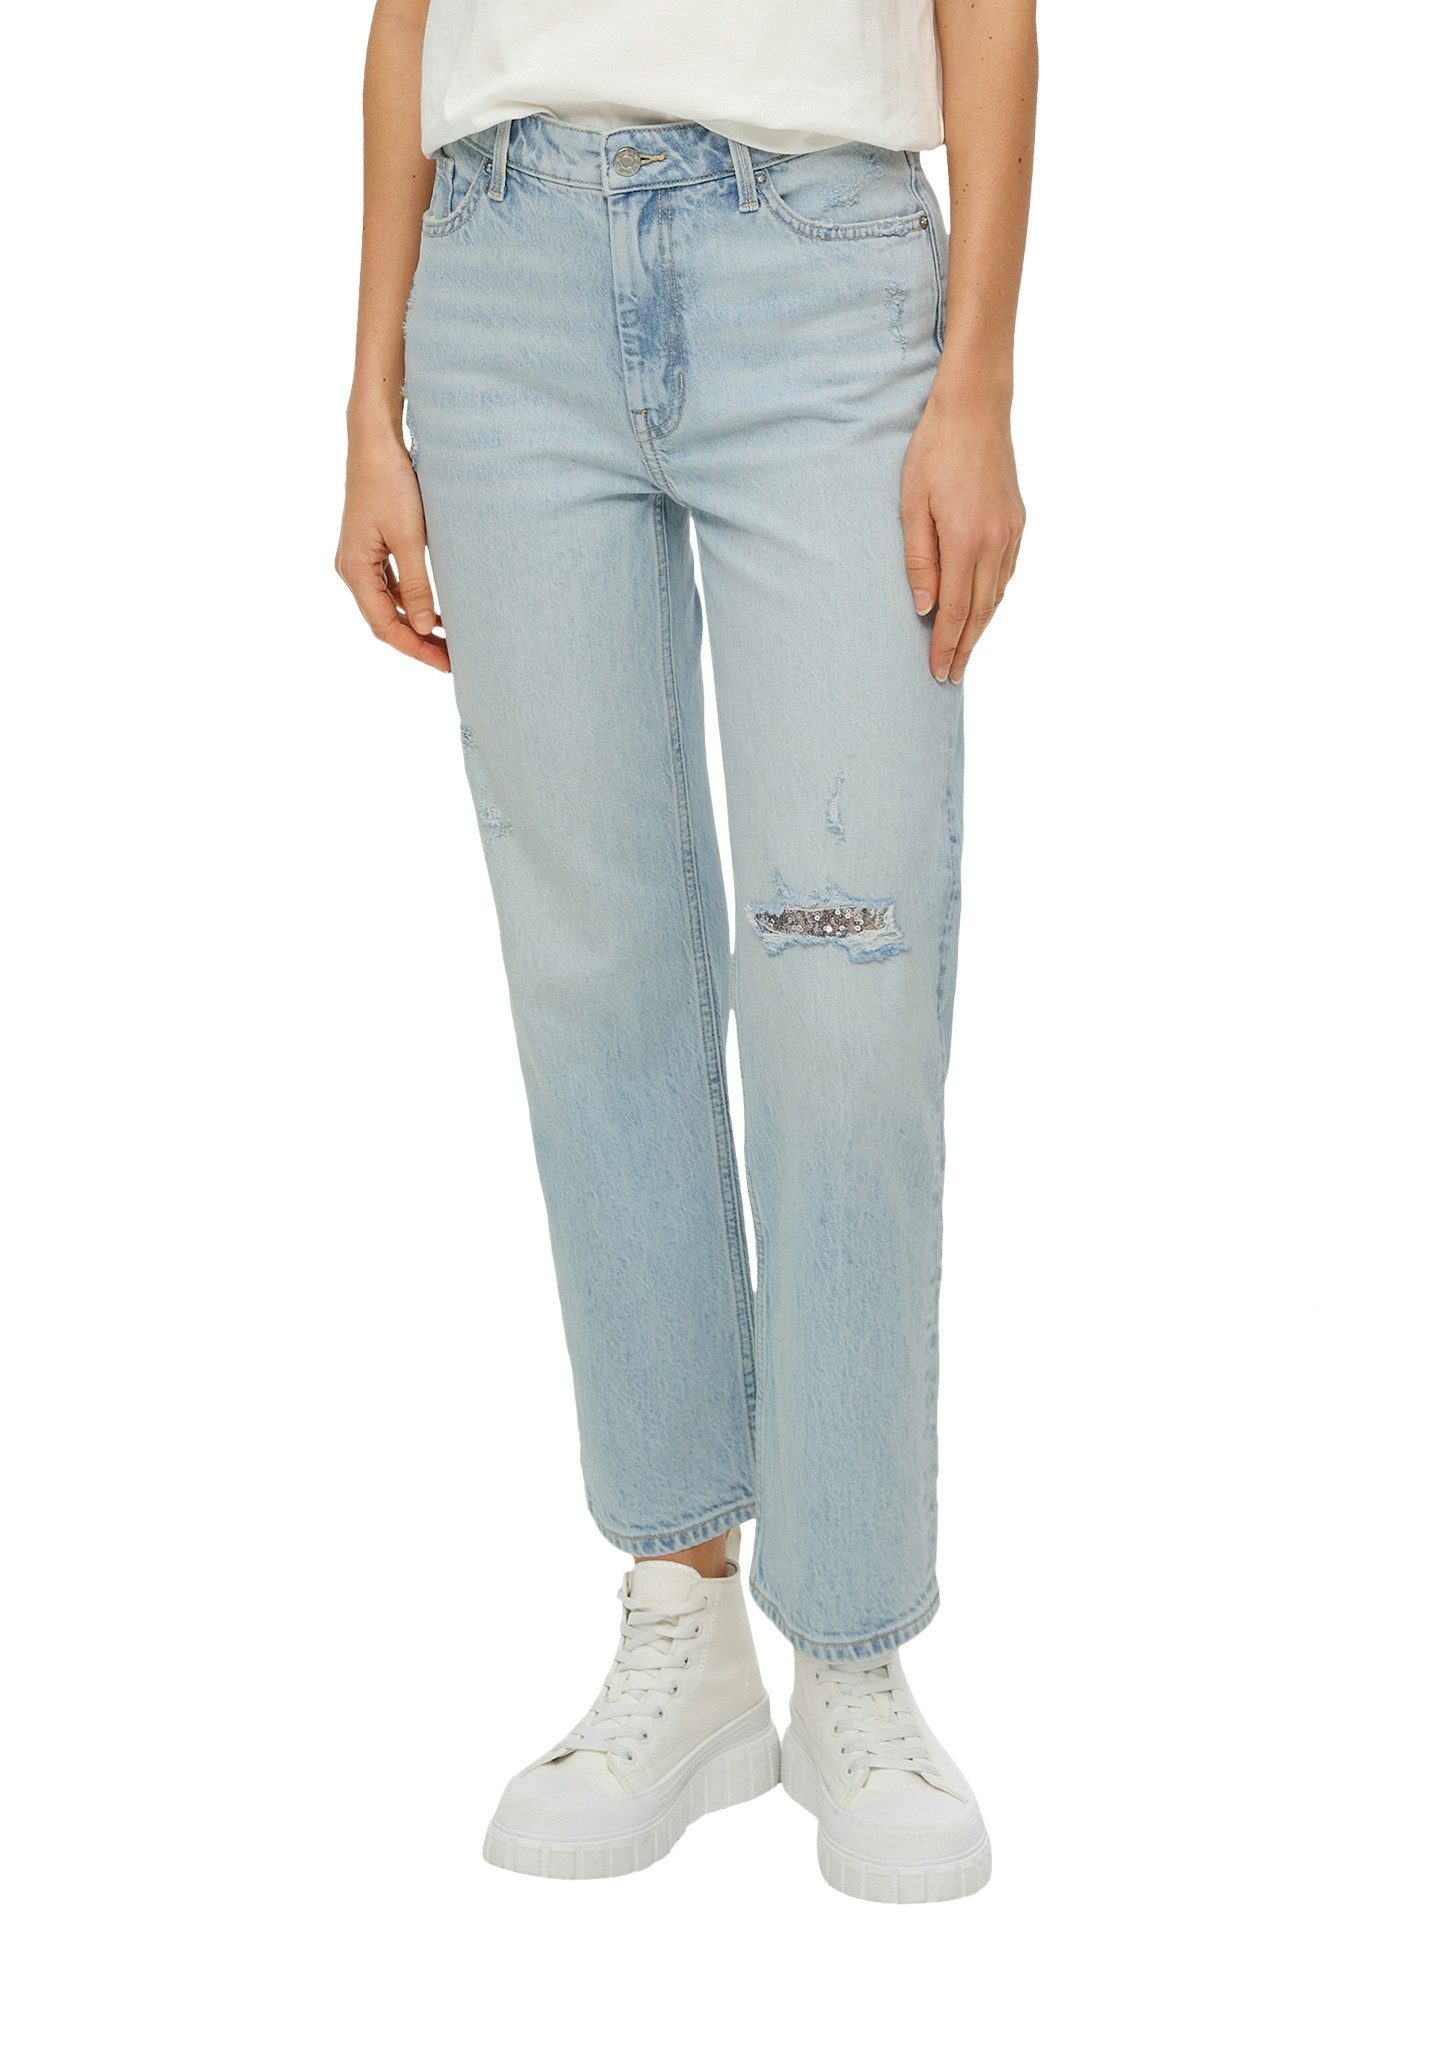 S.Oliver 5-pocket jeans Karolin